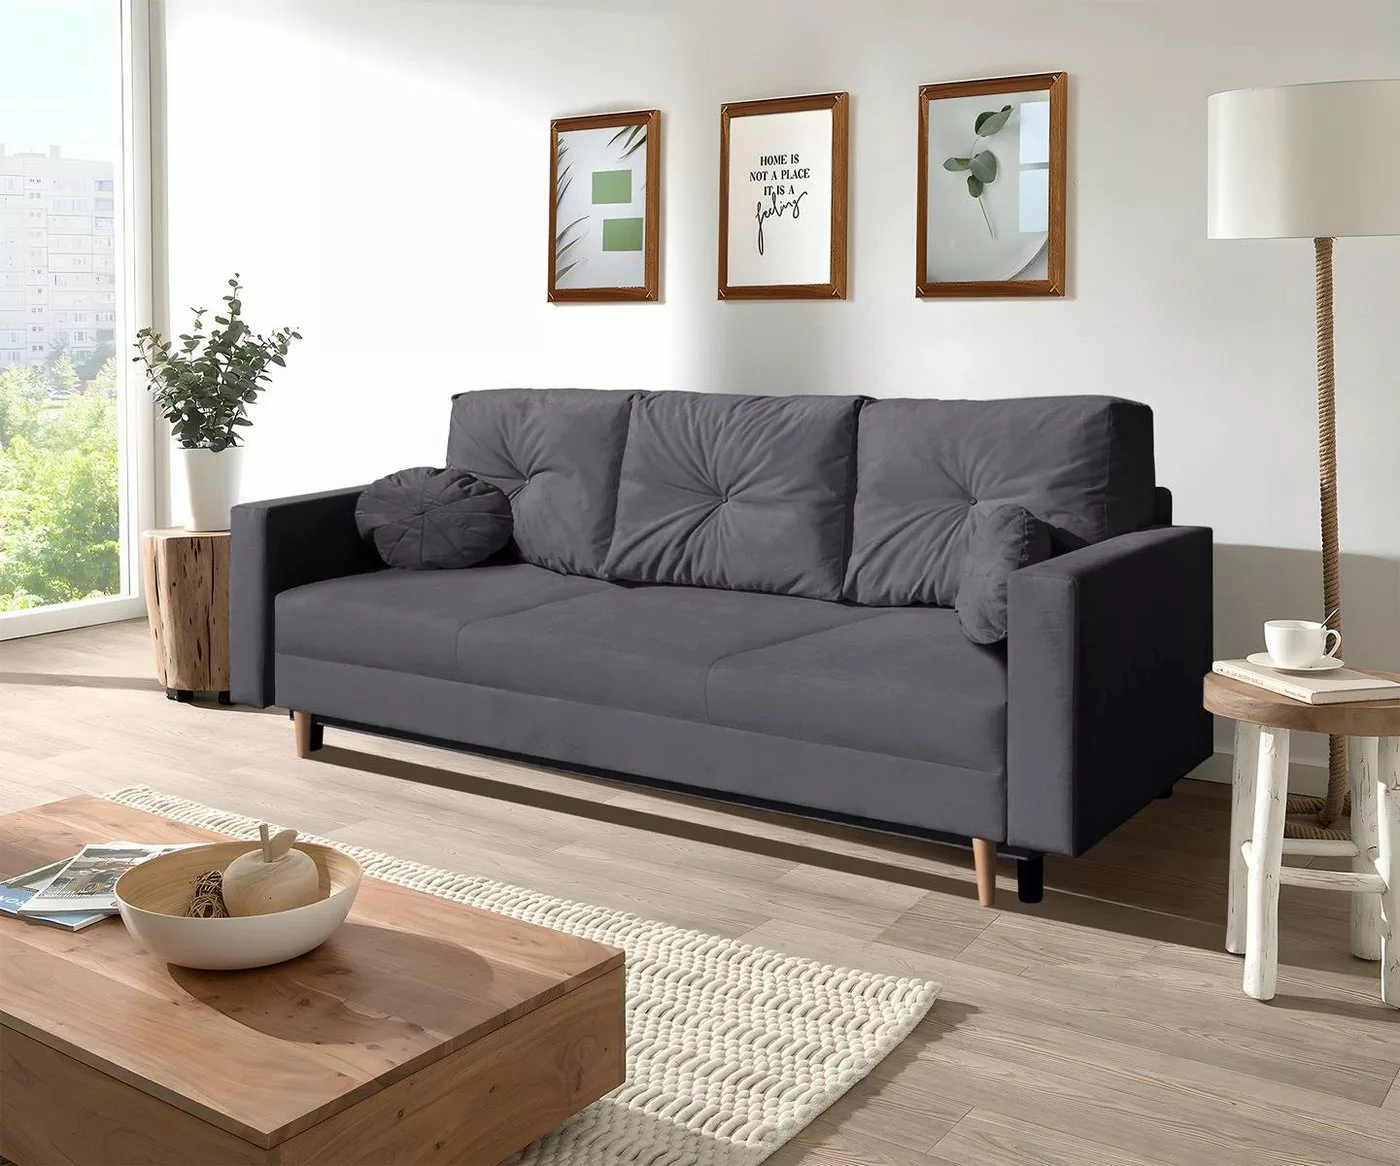 Beautysofa 3-Sitzer MILAN, skandinavisches Design, Wellenunterfederung, Bet günstig online kaufen